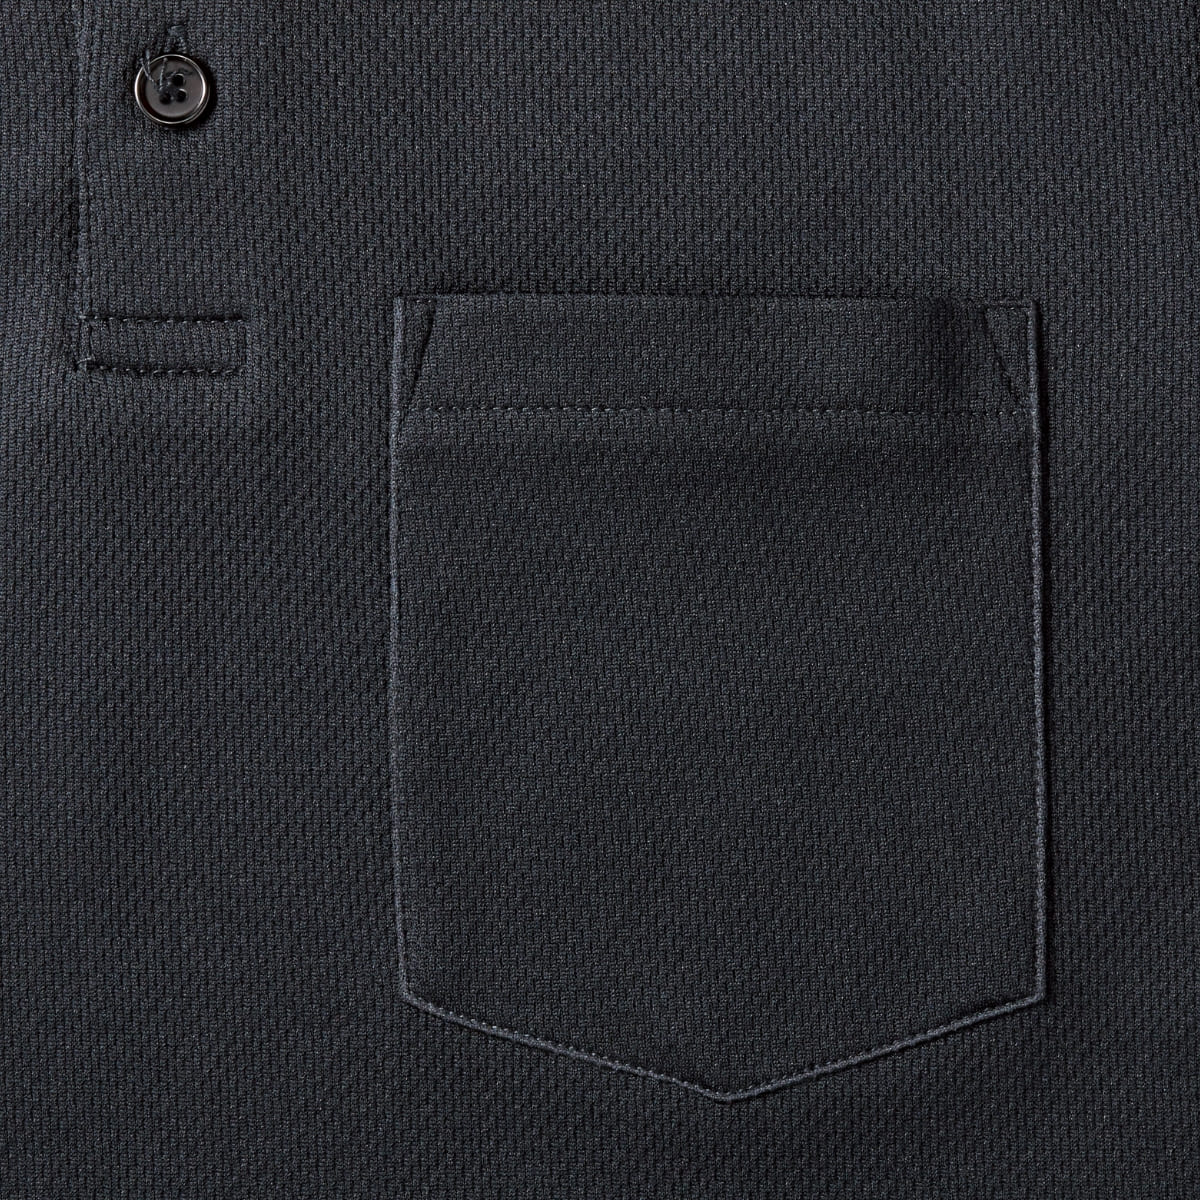 ポケット付き アクティブ ポロシャツ | ビッグサイズ | 1枚 | APP-260 | ブラック